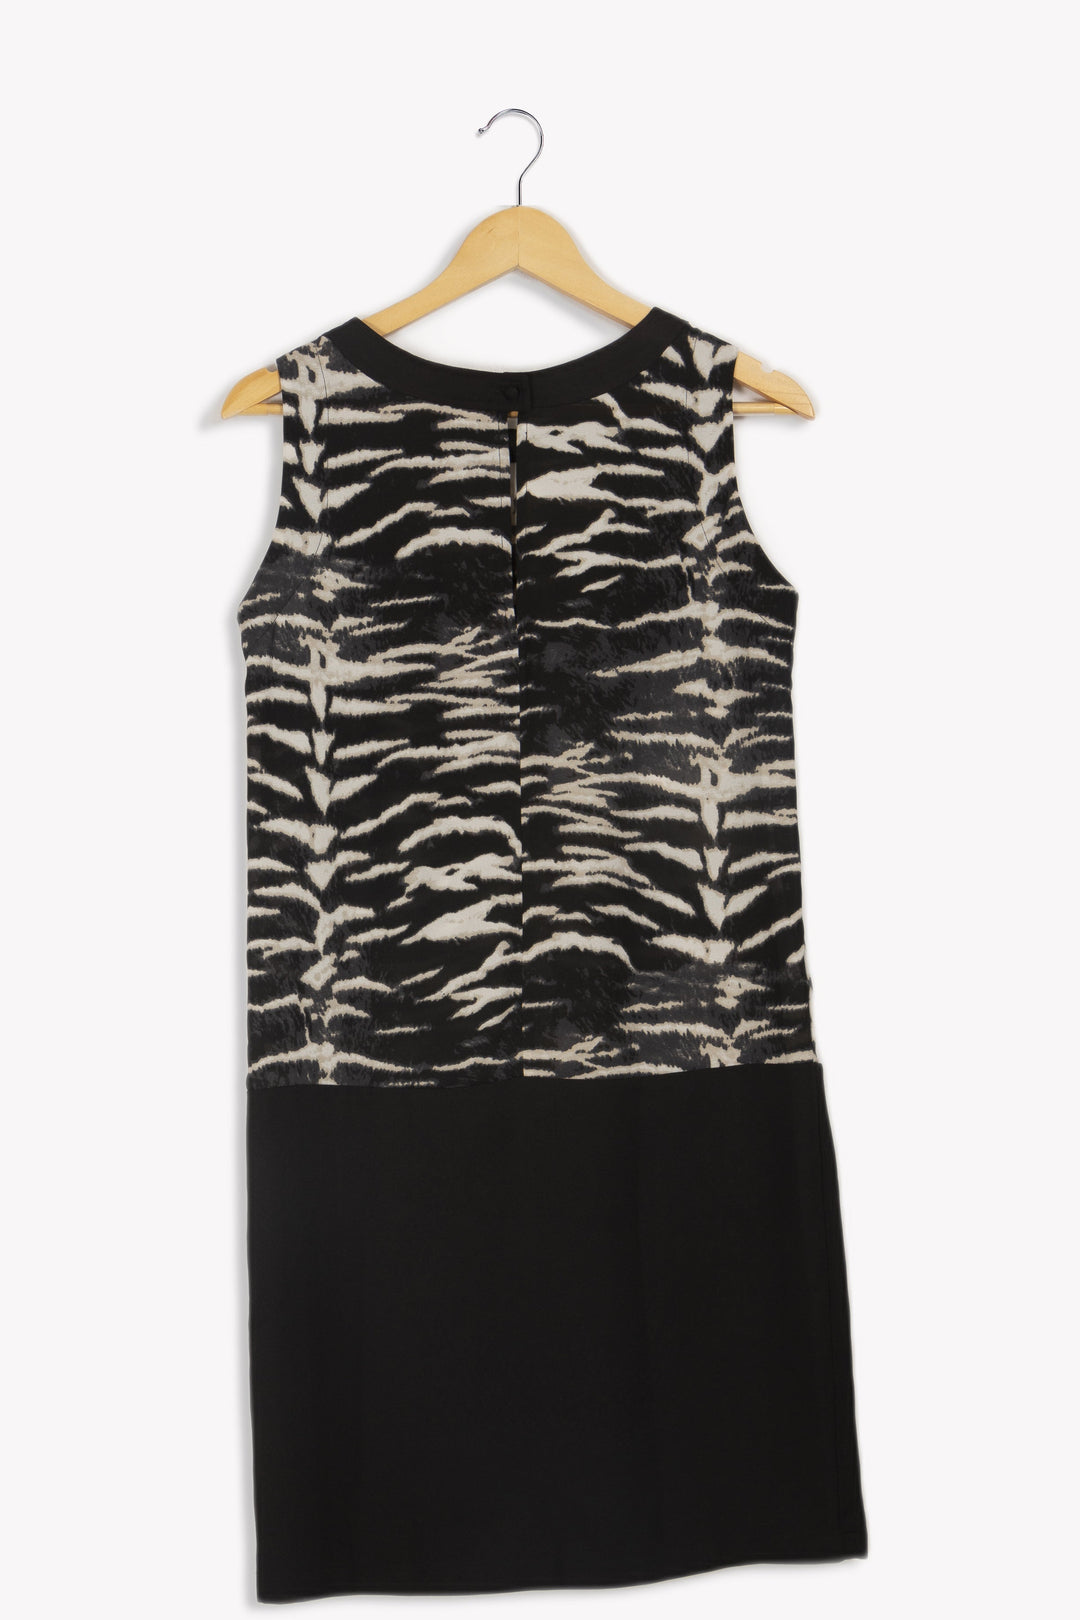 Ärmelloses Kleid mit Zebramuster – Größe 38